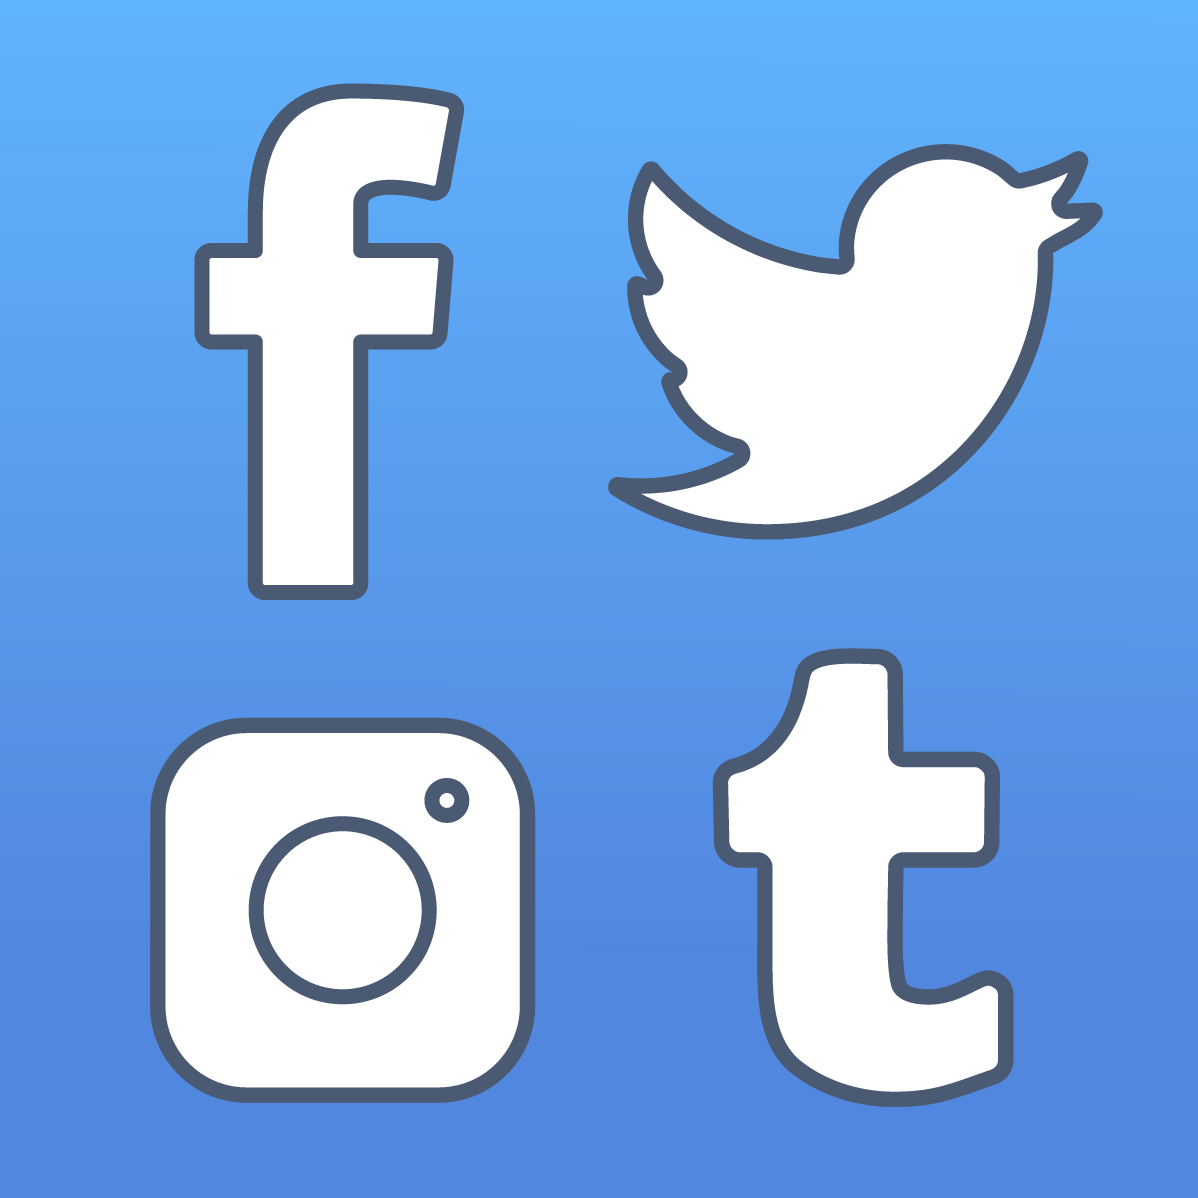 social media stock icons